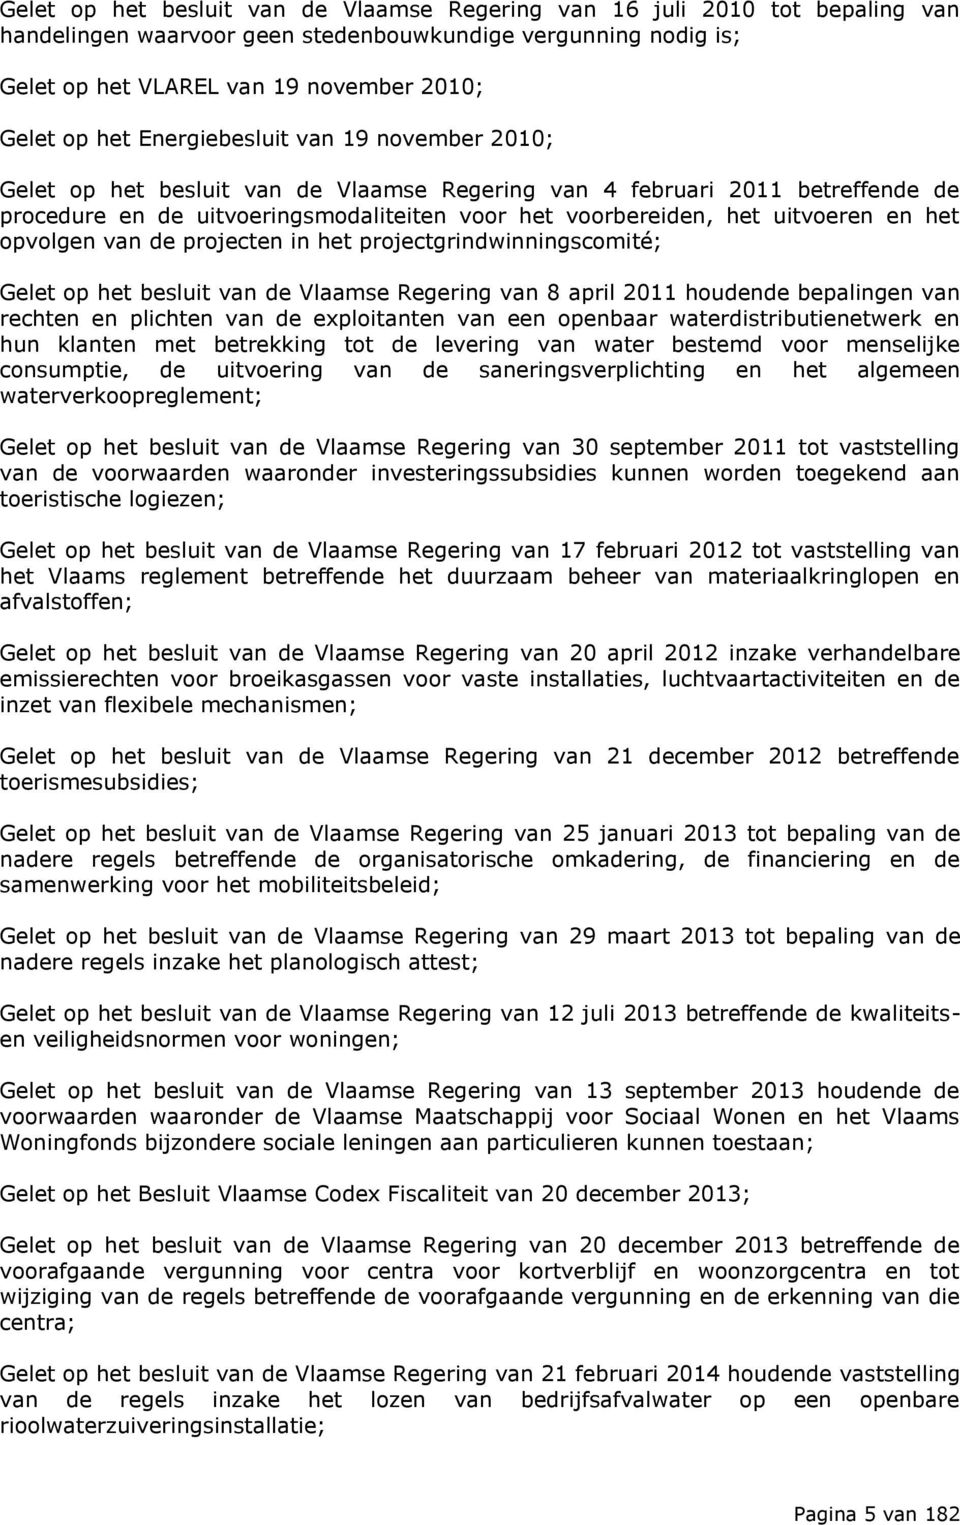 het opvolgen van de projecten in het projectgrindwinningscomité; Gelet op het besluit van de Vlaamse Regering van 8 april 2011 houdende bepalingen van rechten en plichten van de exploitanten van een